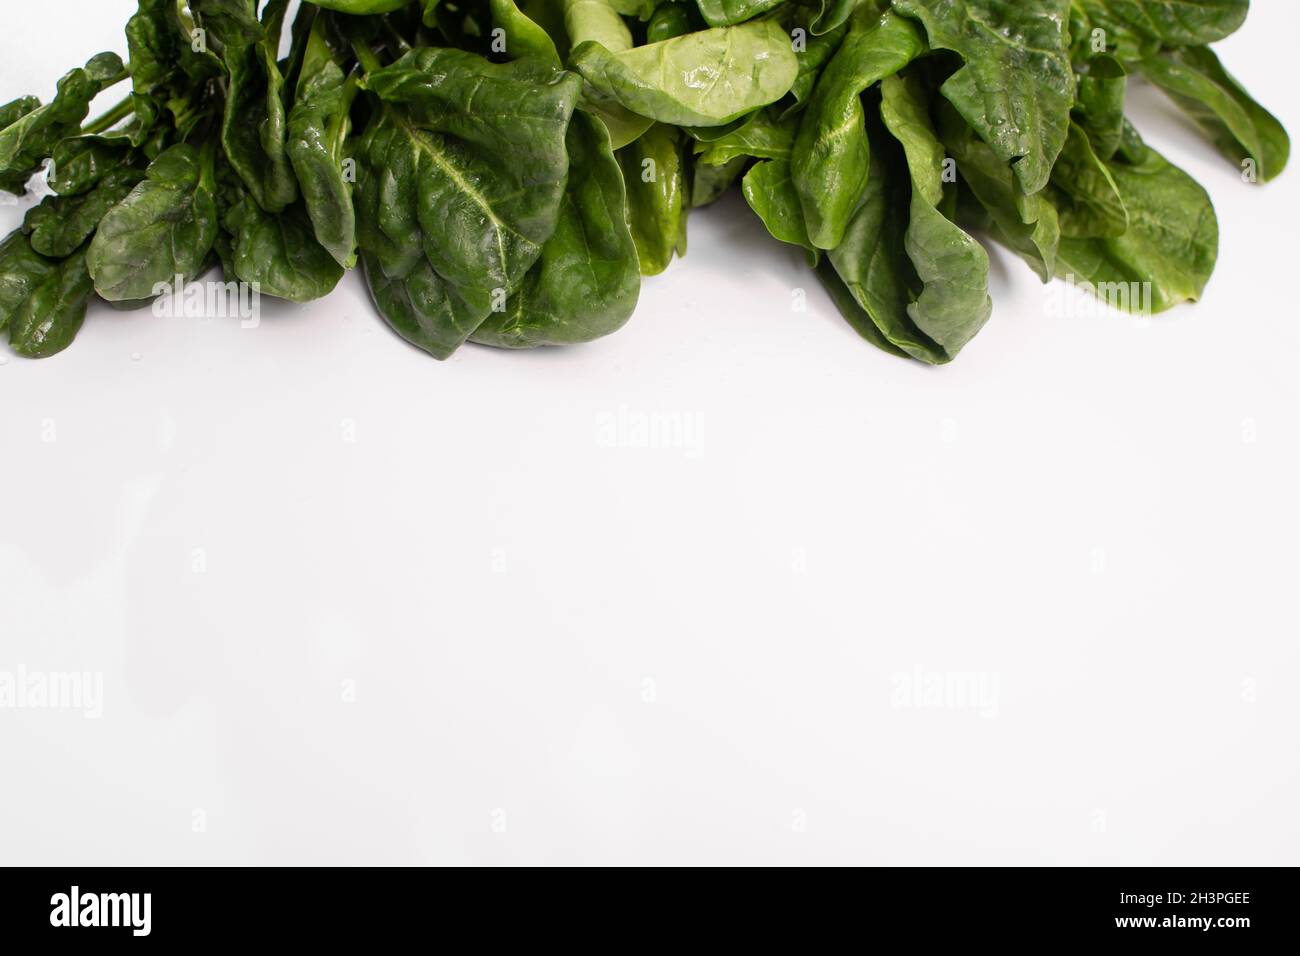 Il concetto di alimentazione sana. Primo piano degli spinaci su sfondo bianco. Spazio vuoto Foto Stock